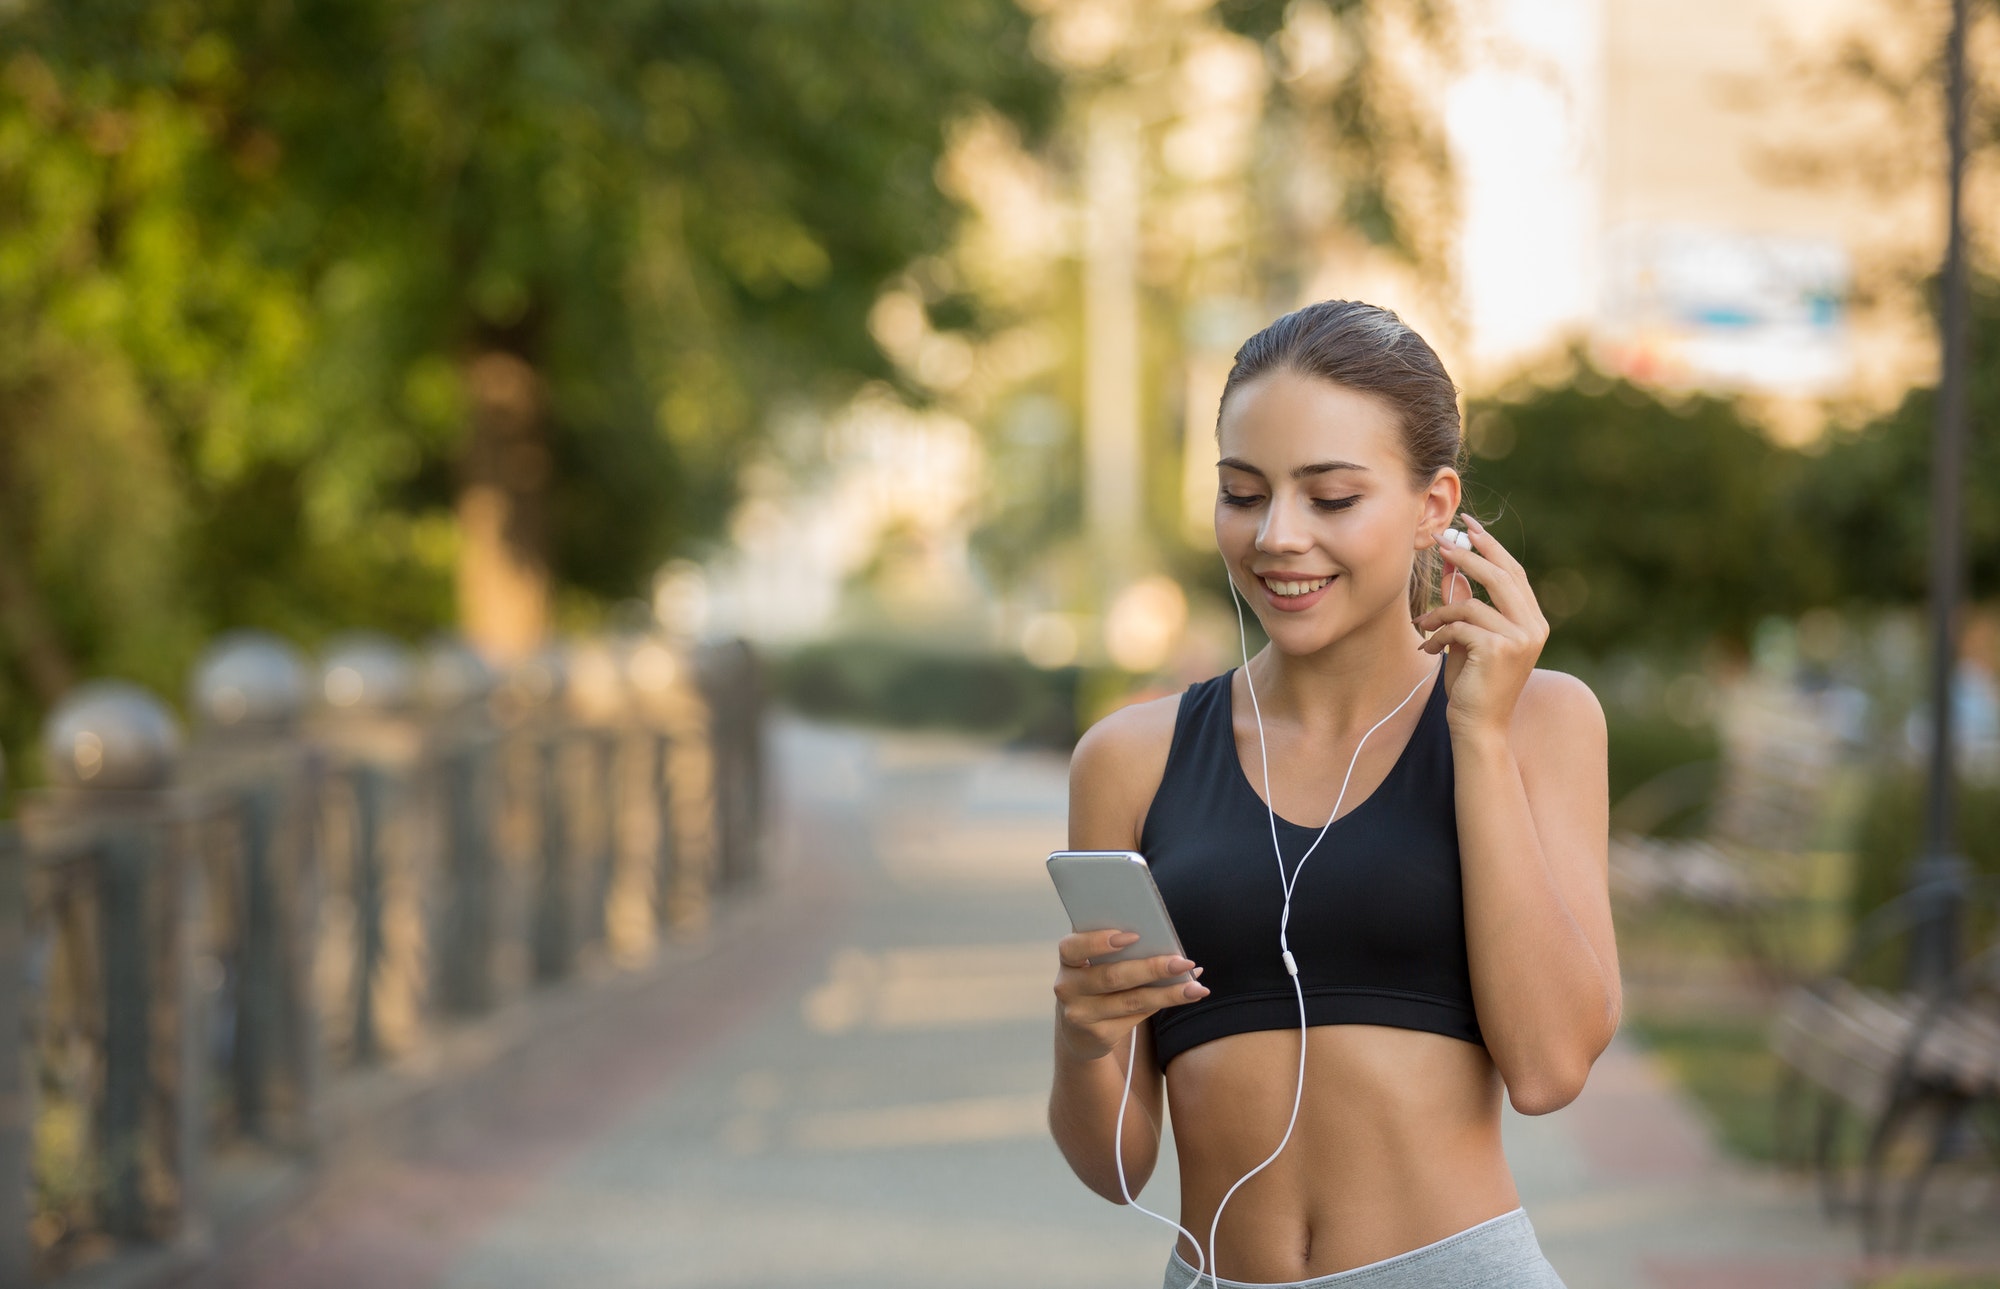 Girl choose music for running on smartphone